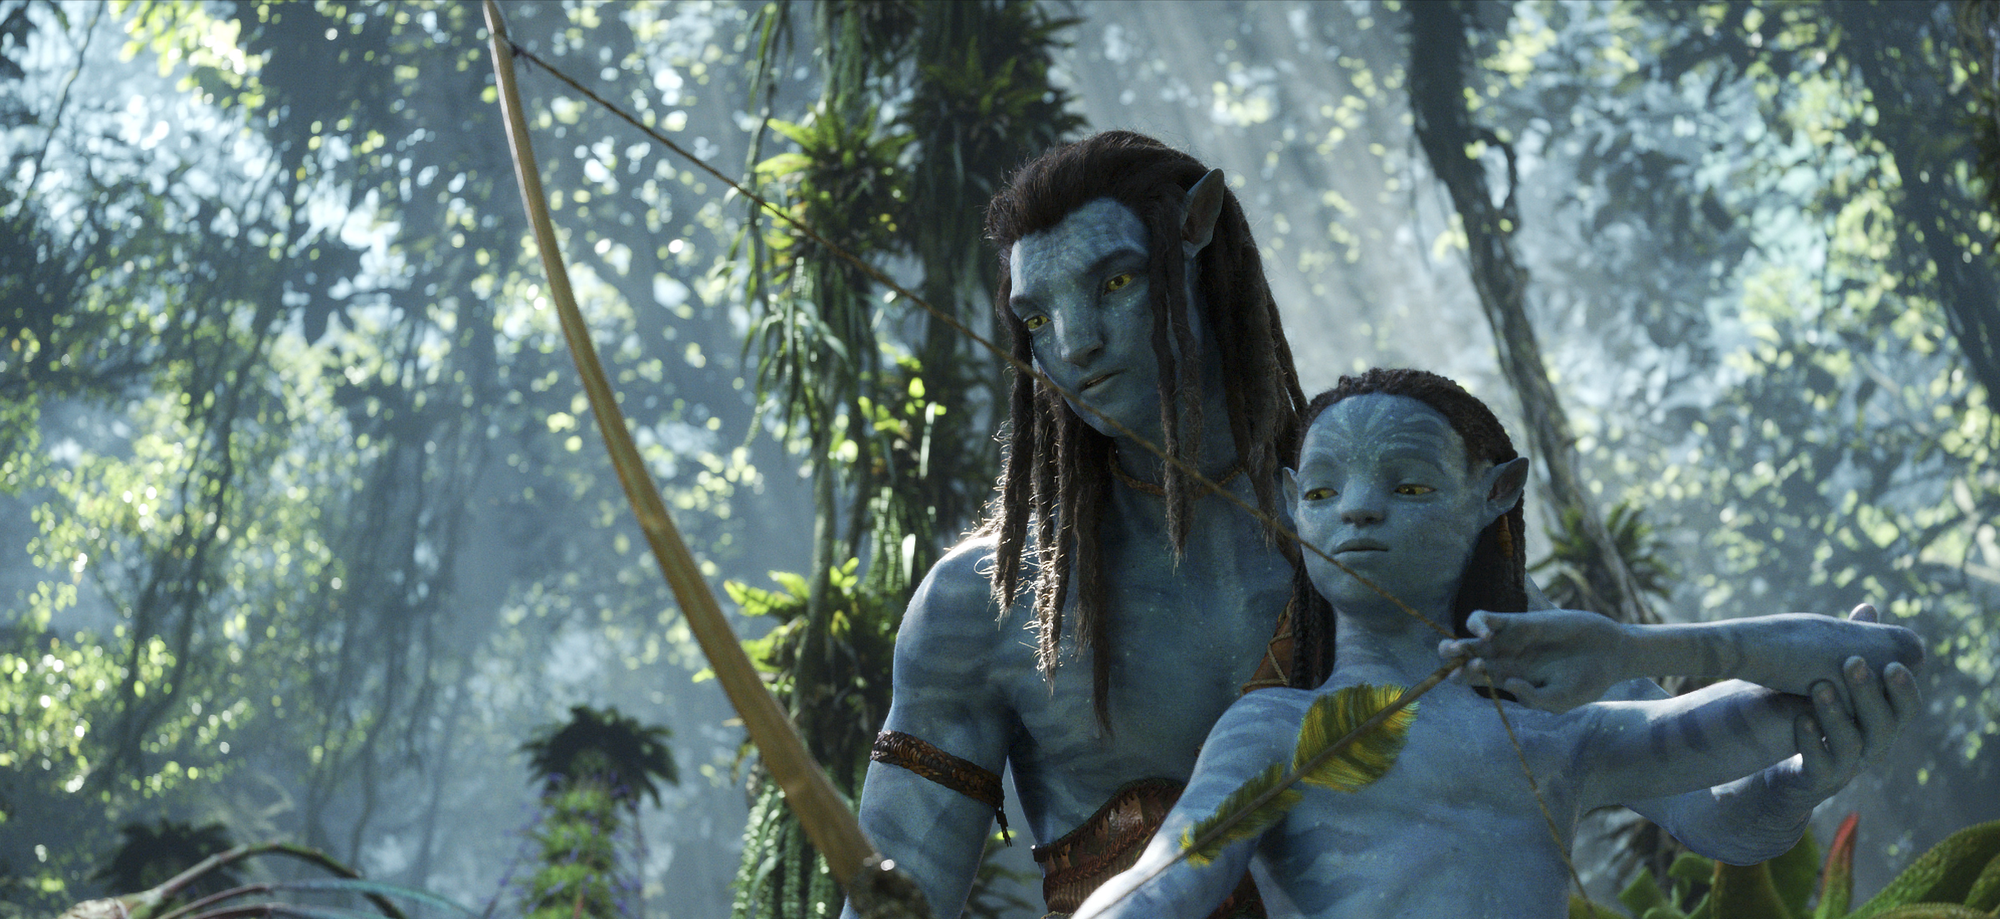 Sự thật về kỳ tích phim Avatar 2: Đạo diễn lặn 10km xuống biển để tìm cảm hứng - Ảnh 9.